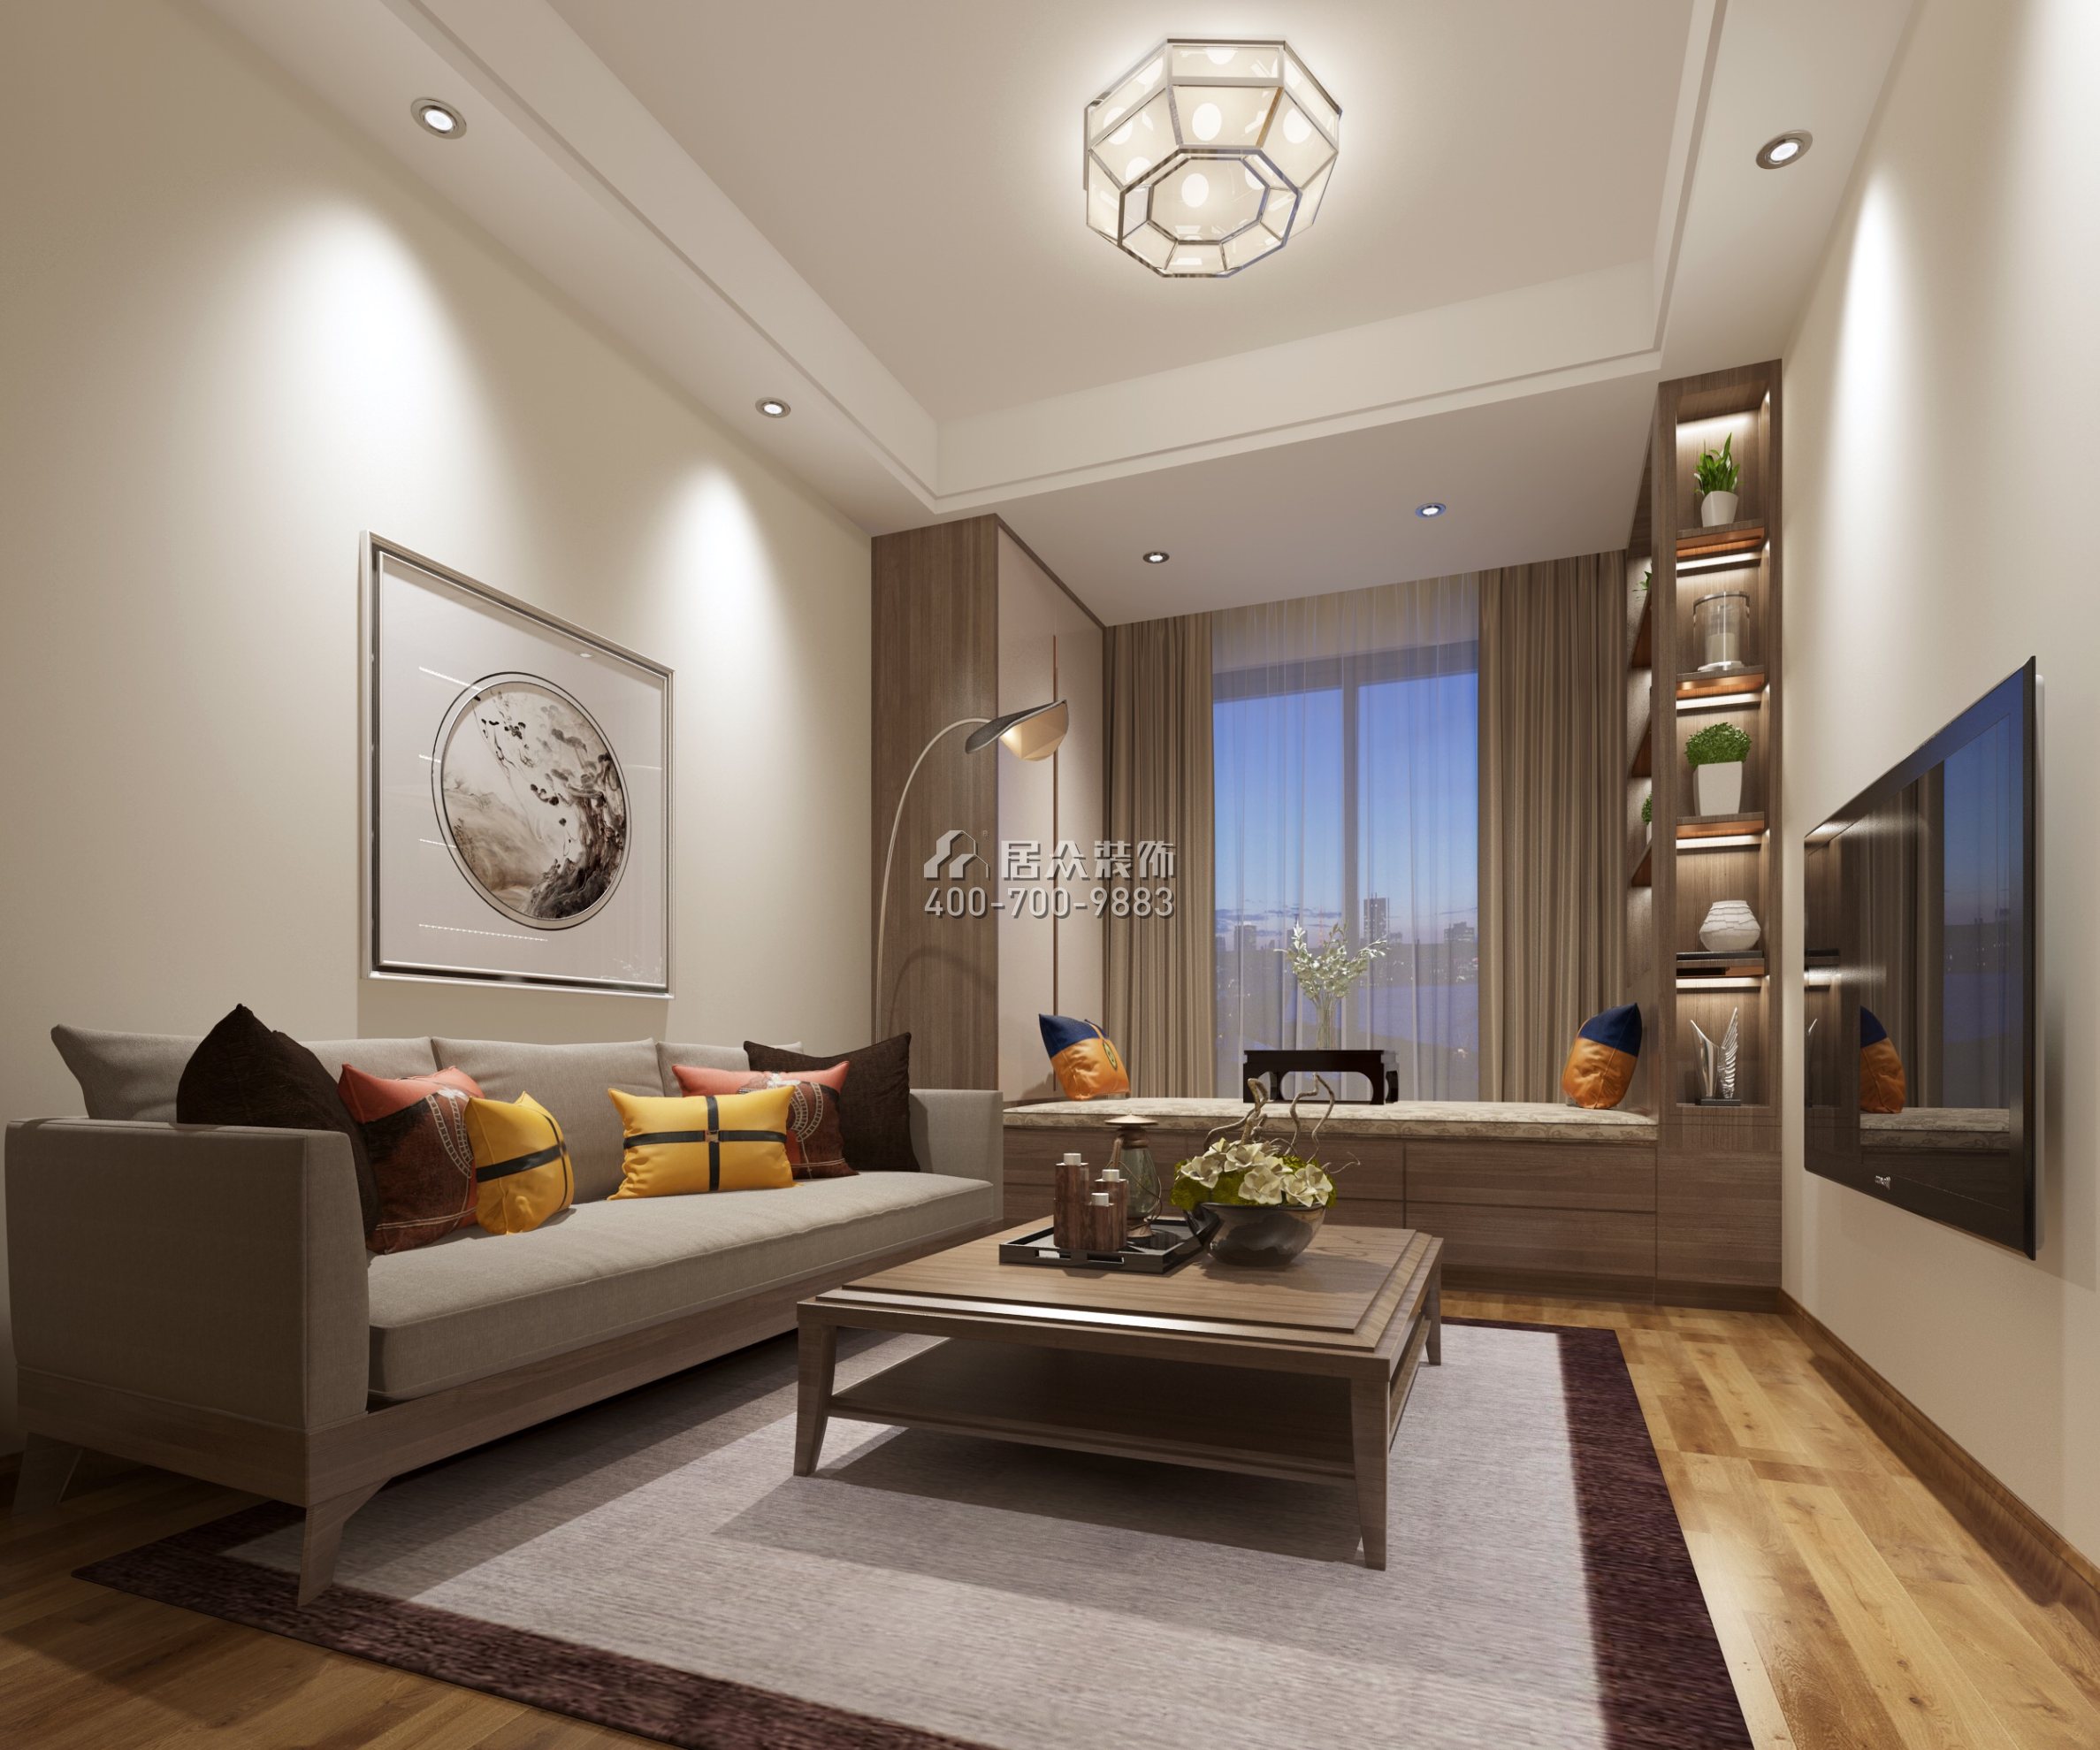 美的君兰江山200平方米中式风格平层户型客厅装修效果图